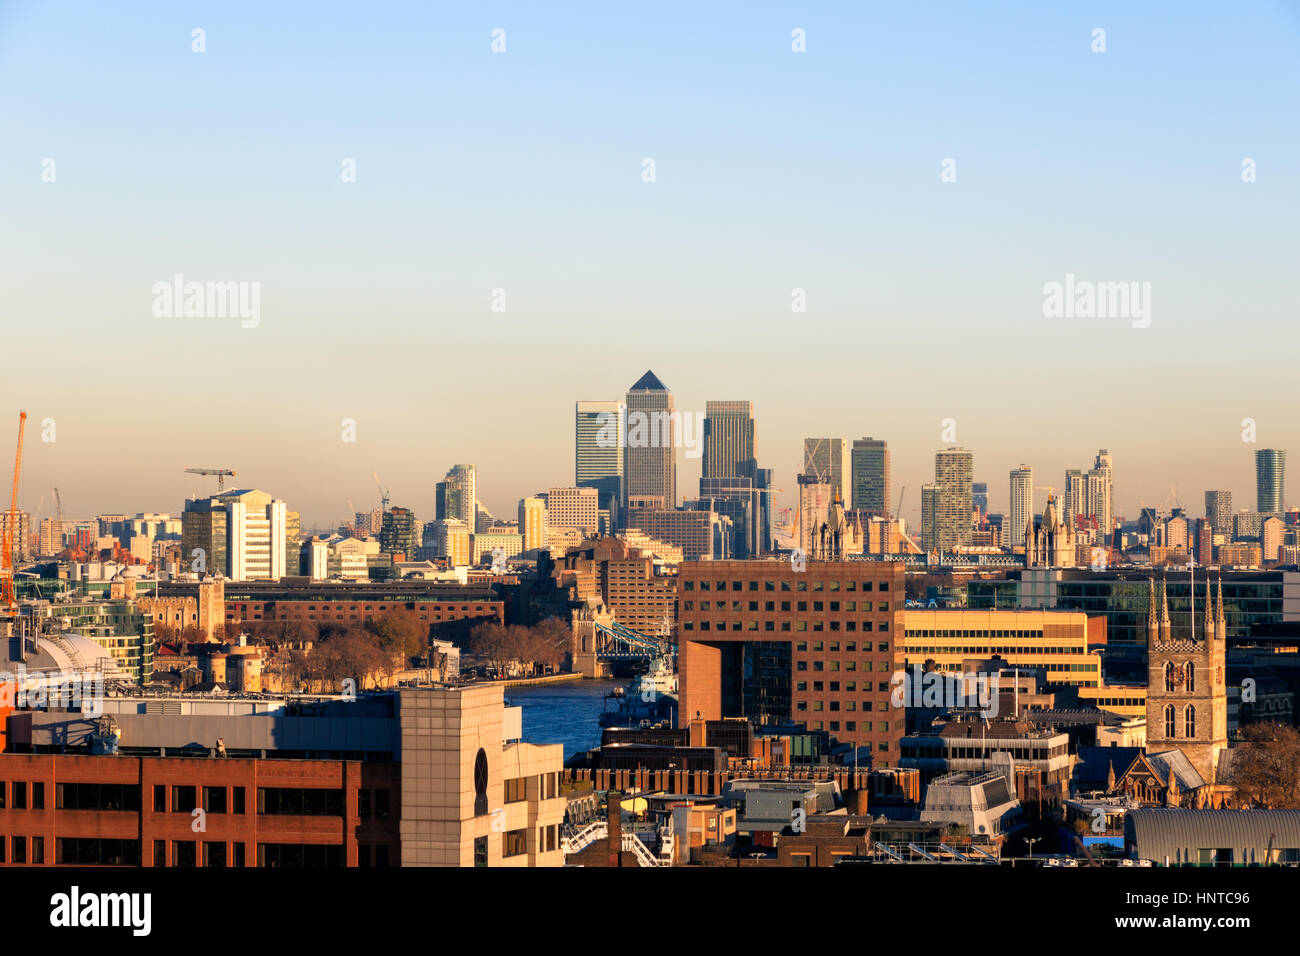 Coucher de soleil sur le paysage urbain du quartier financier de Londres, y compris Canary Wharf Banque D'Images